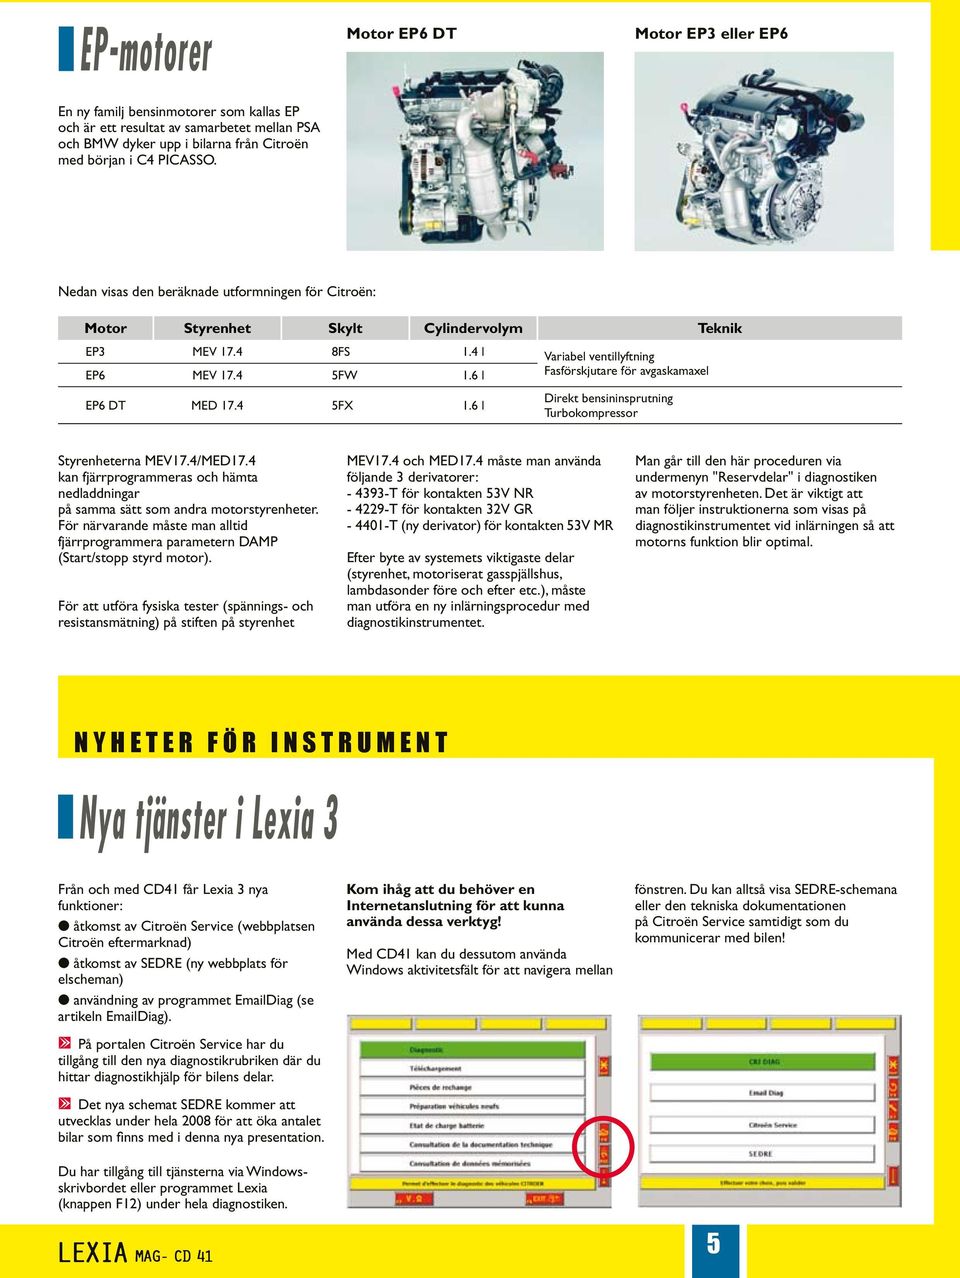 6 l Fasförskjutare för avgaskamaxel EP6 DT MED 17.4 5FX 1.6 l Direkt bensininsprutning Turbokompressor Styrenheterna MEV17.4/MED17.